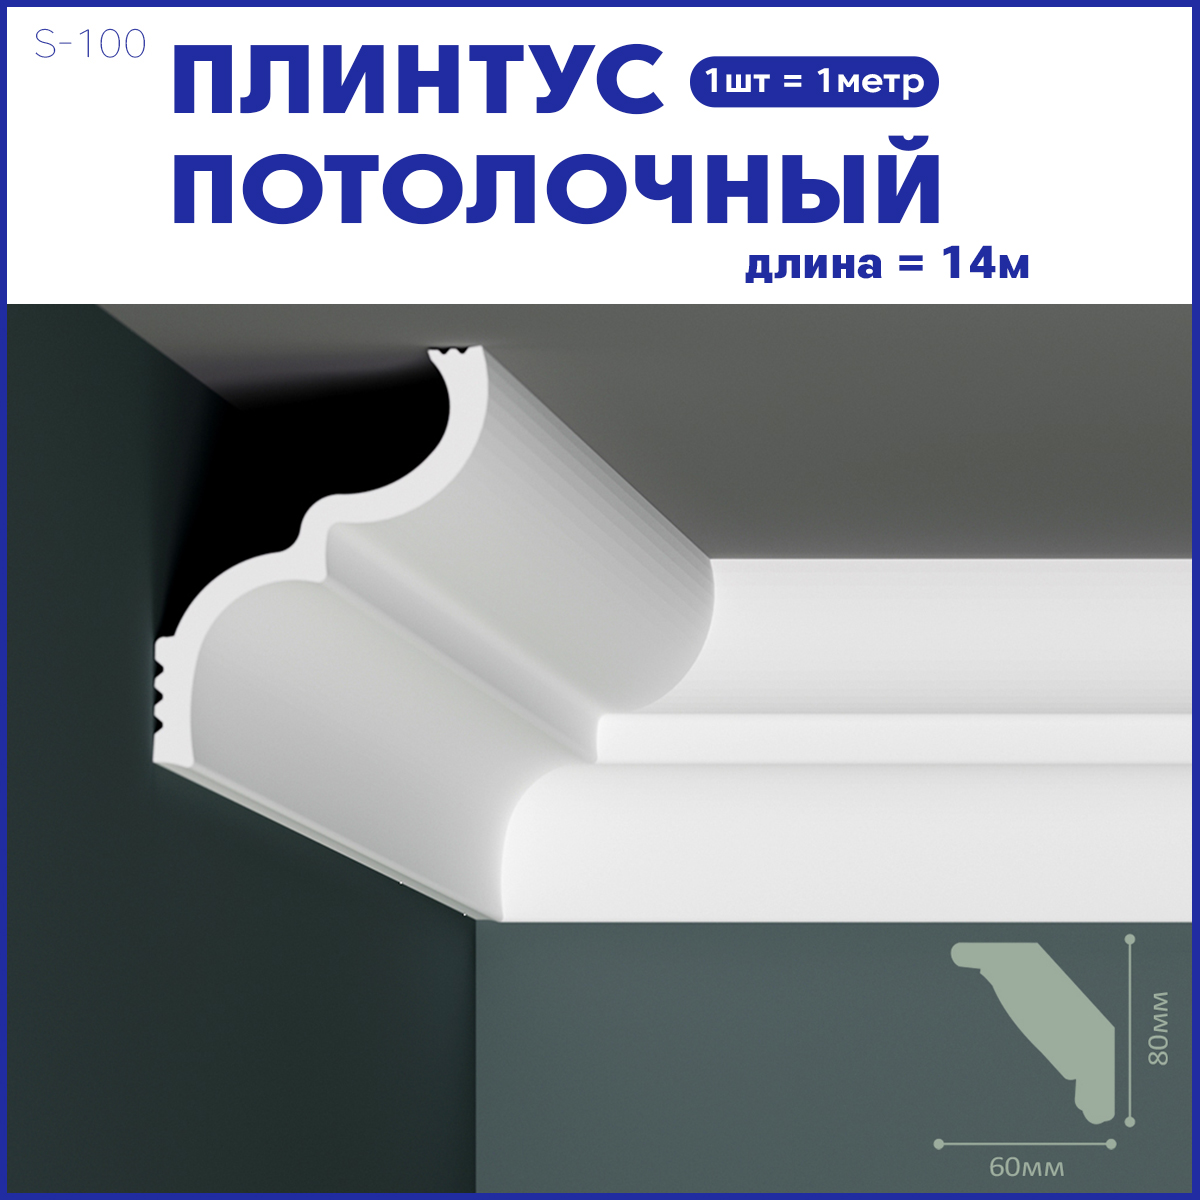 фото Плинтус потолочный s-100, комплект 14 шт. x 1м, 14м nobrand